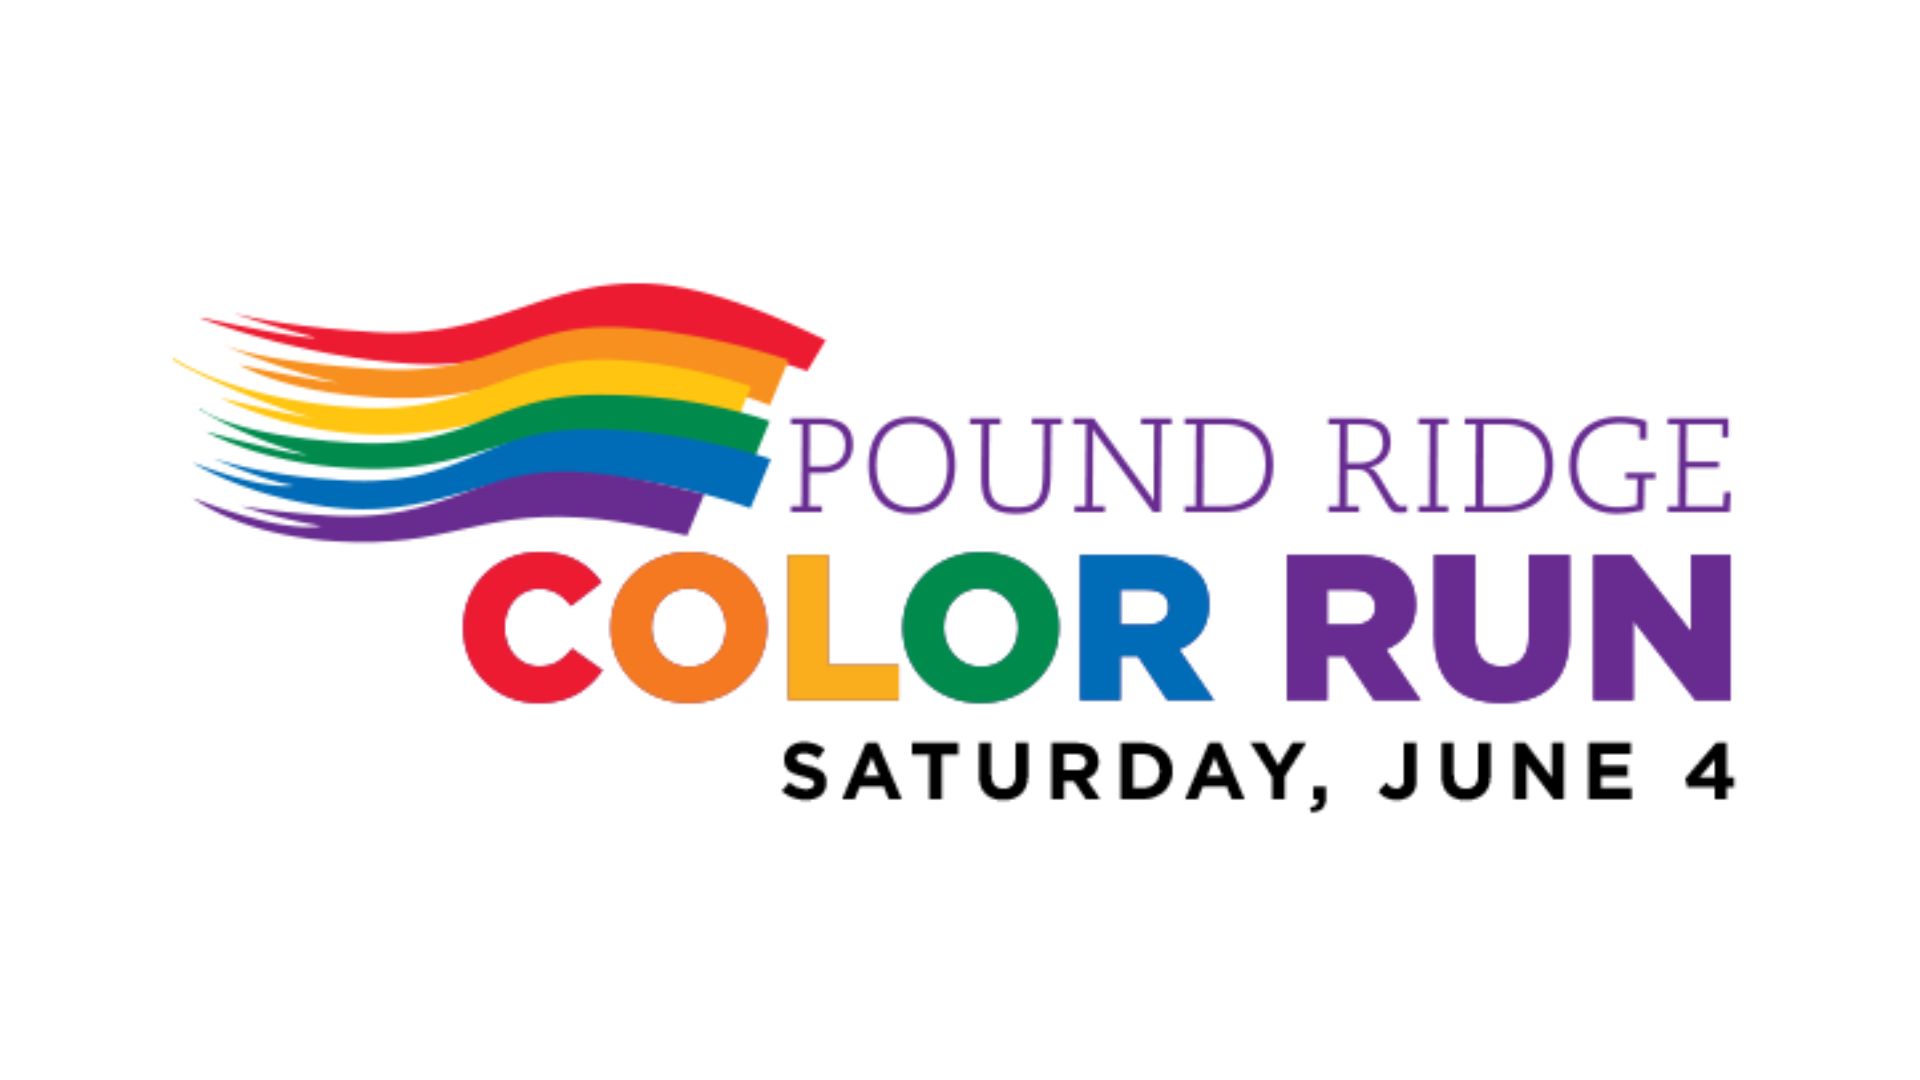 Pound Ridge Color Run, Pound Ridge, New York, United States